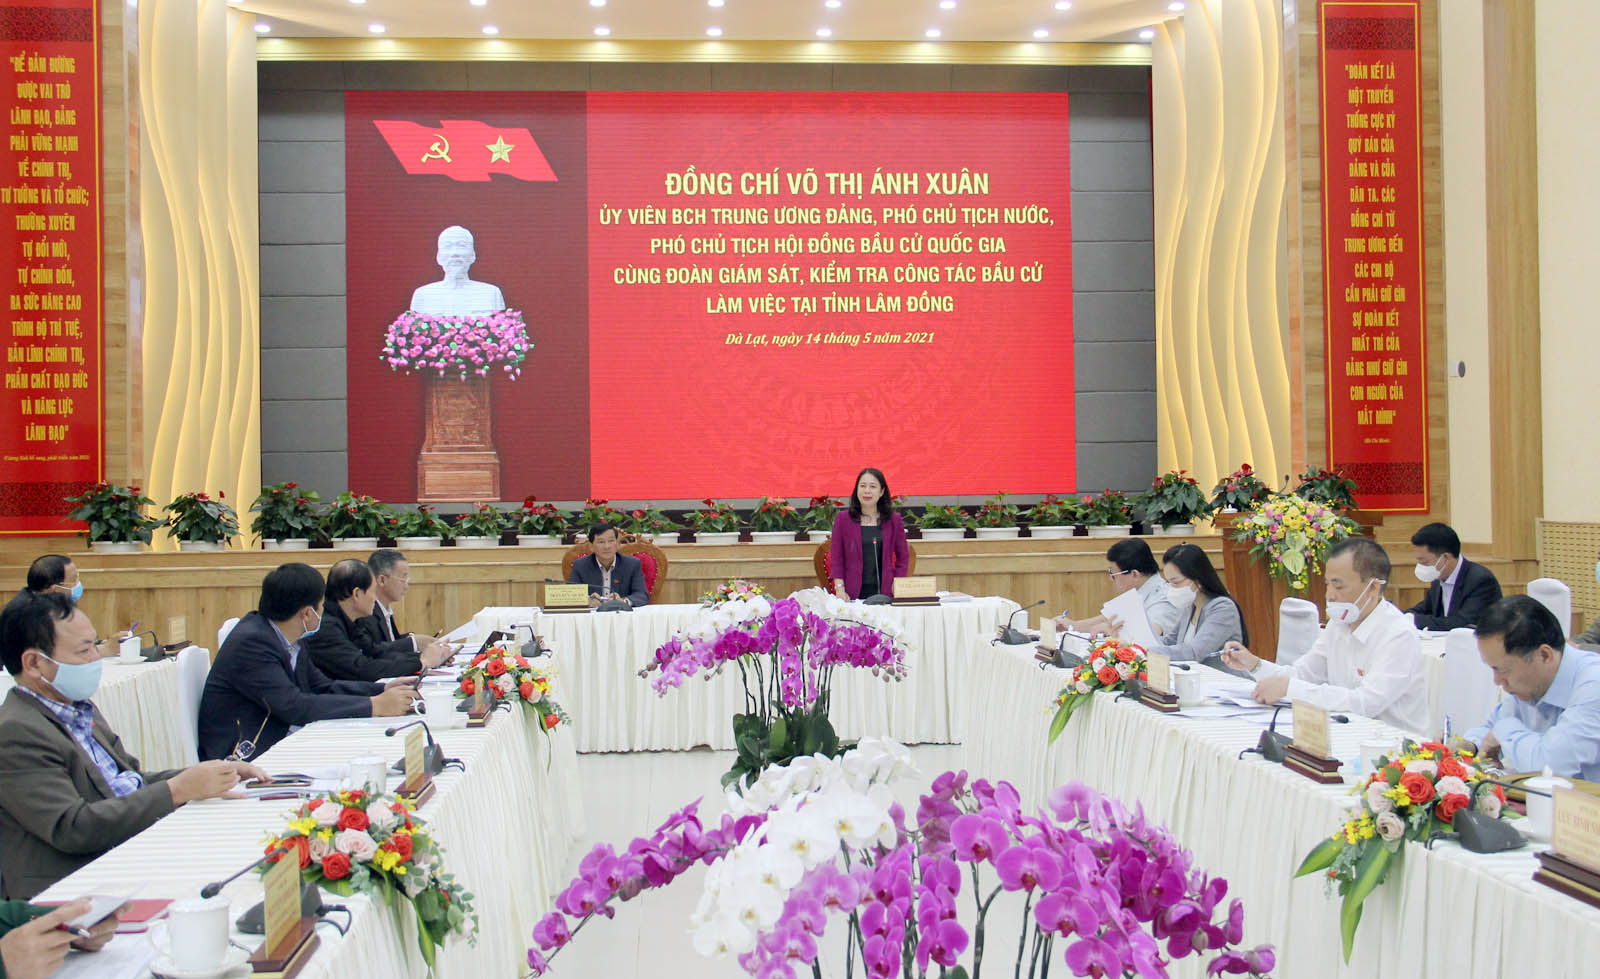 Phó Chủ tịch nước kiểm tra công tác bầu cử tại Lâm Đồng - Ảnh 1.